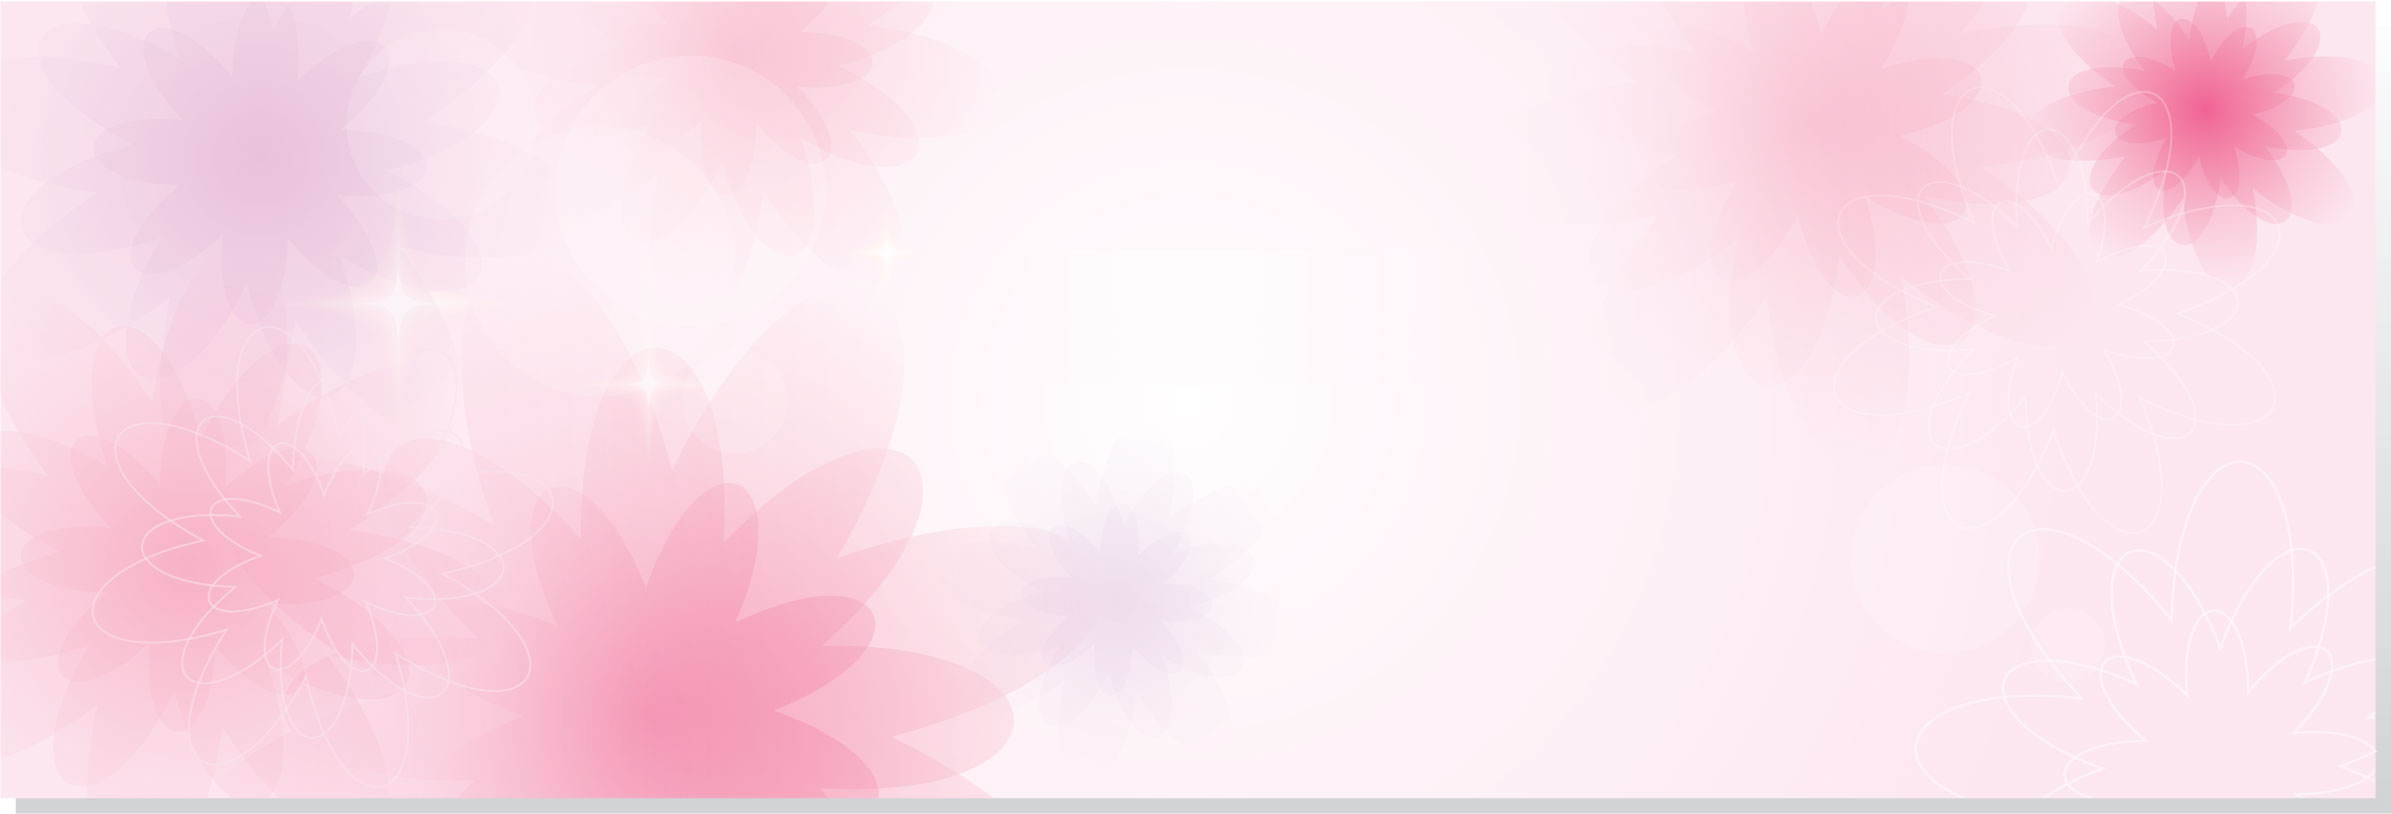 花や葉のイラスト フリー素材 バナー タイトル枠no 023 淡いピンク